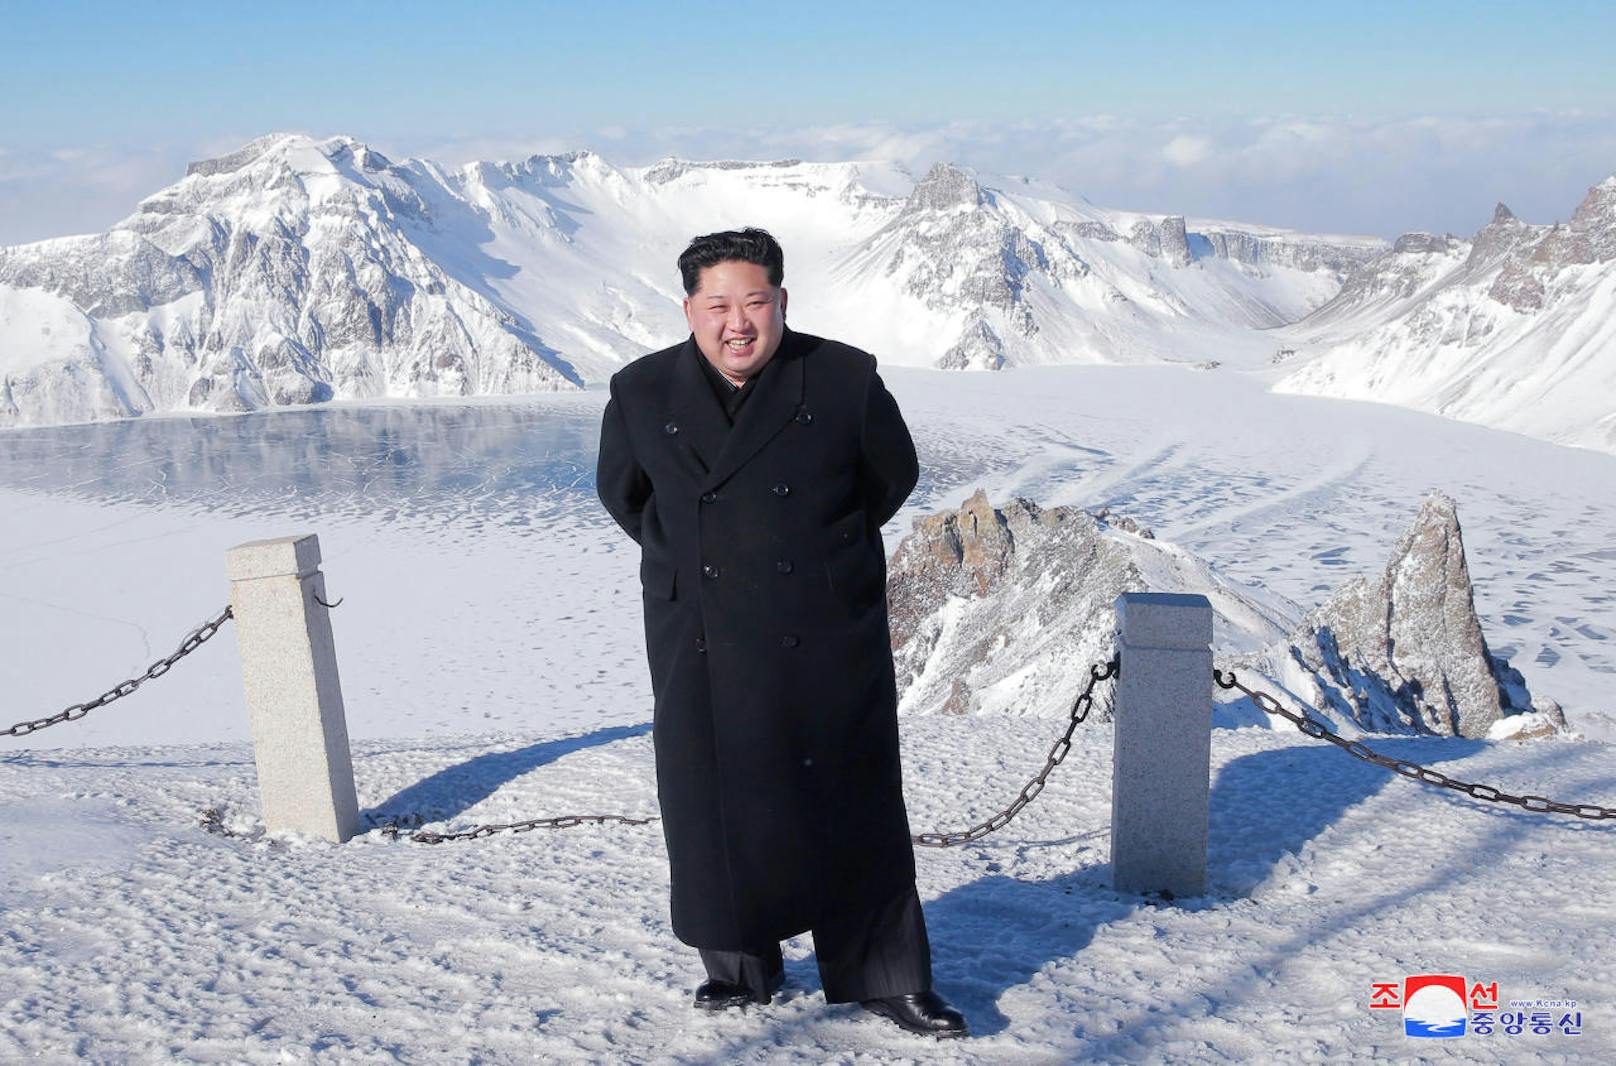 Am Samstag veröffentlichte Bilder zeigen Nordkoreas Diktator Kim Jong-un vor dem Himmelssee auf dem Gipfel des 2.500-Meter-Vulkans Paektusan. <a href="https://www.heute.at/welt/news/story/Nordkorea--Plant-Kim-Jong-Un-eine-Massenexekution--49378797" target="_blank">In der Vergangenheit folgte darauf immer ein Blutbad.</a>